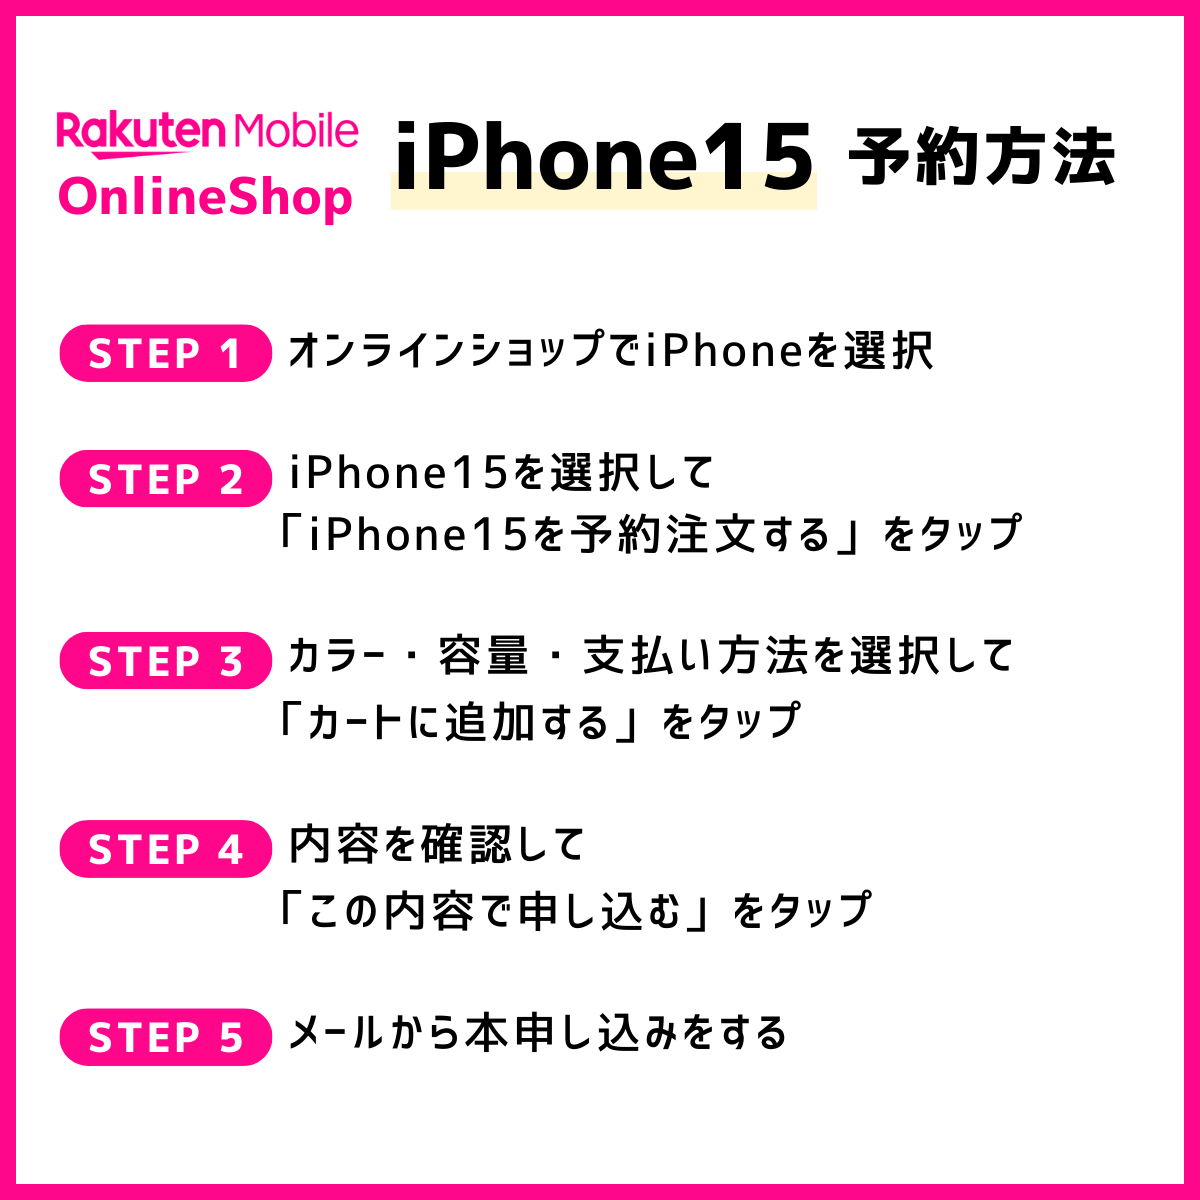 楽天モバイルオンラインショップでiPhone15を予約する方法